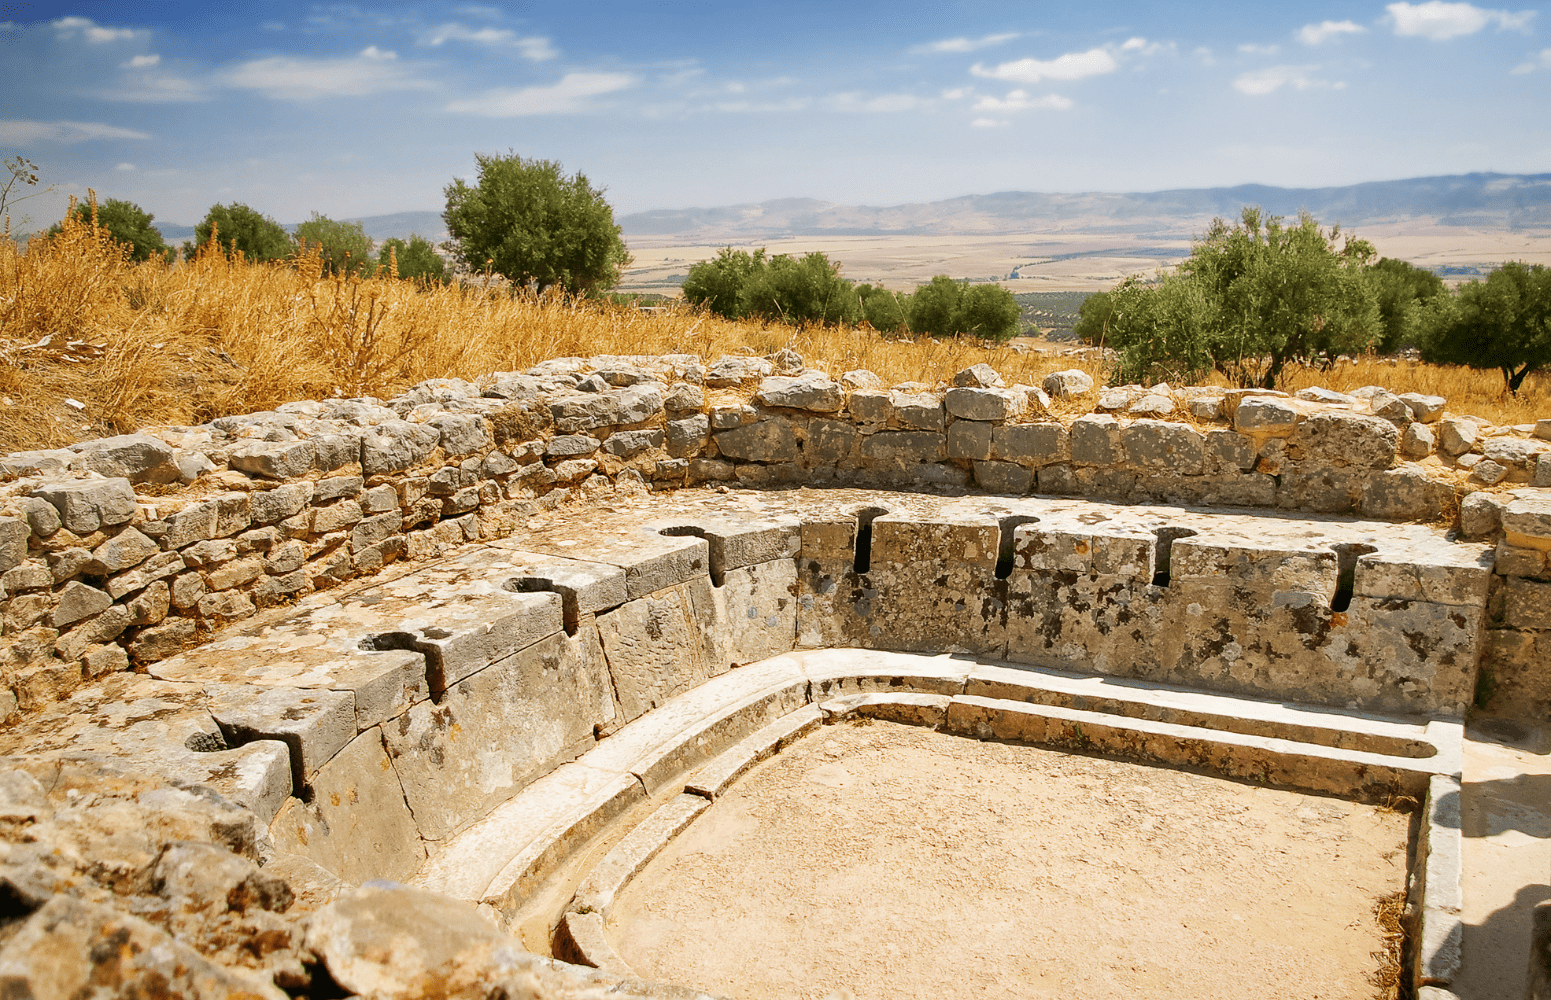 Roman latrine toilets